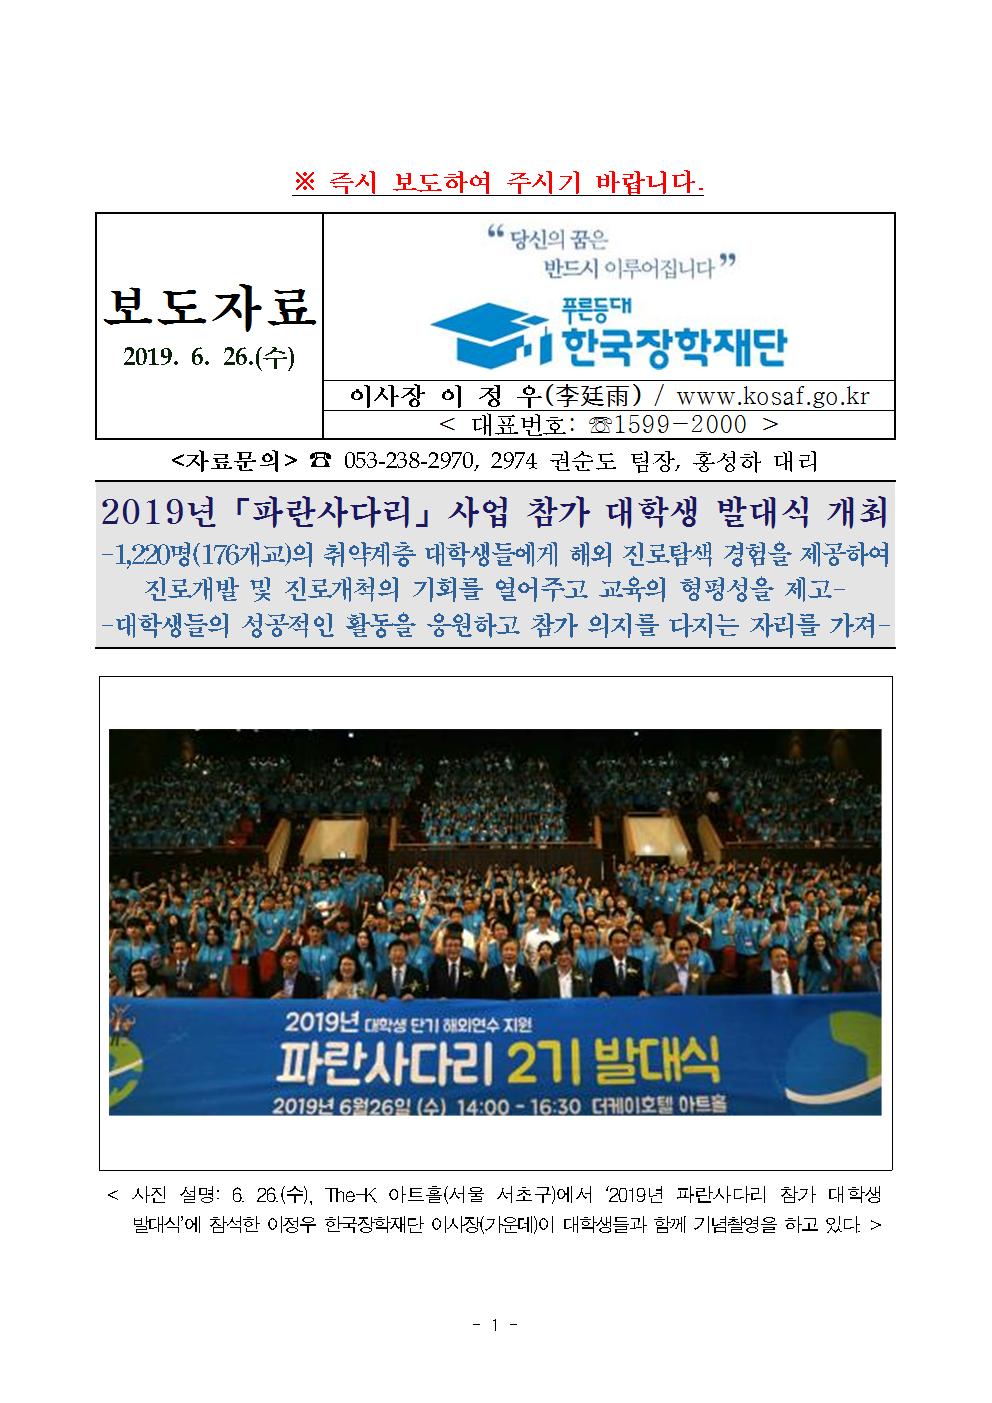 06-27(목)[보도자료] 2019년「파란사다리」사업 참가 대학생 발대식 개최001.jpg